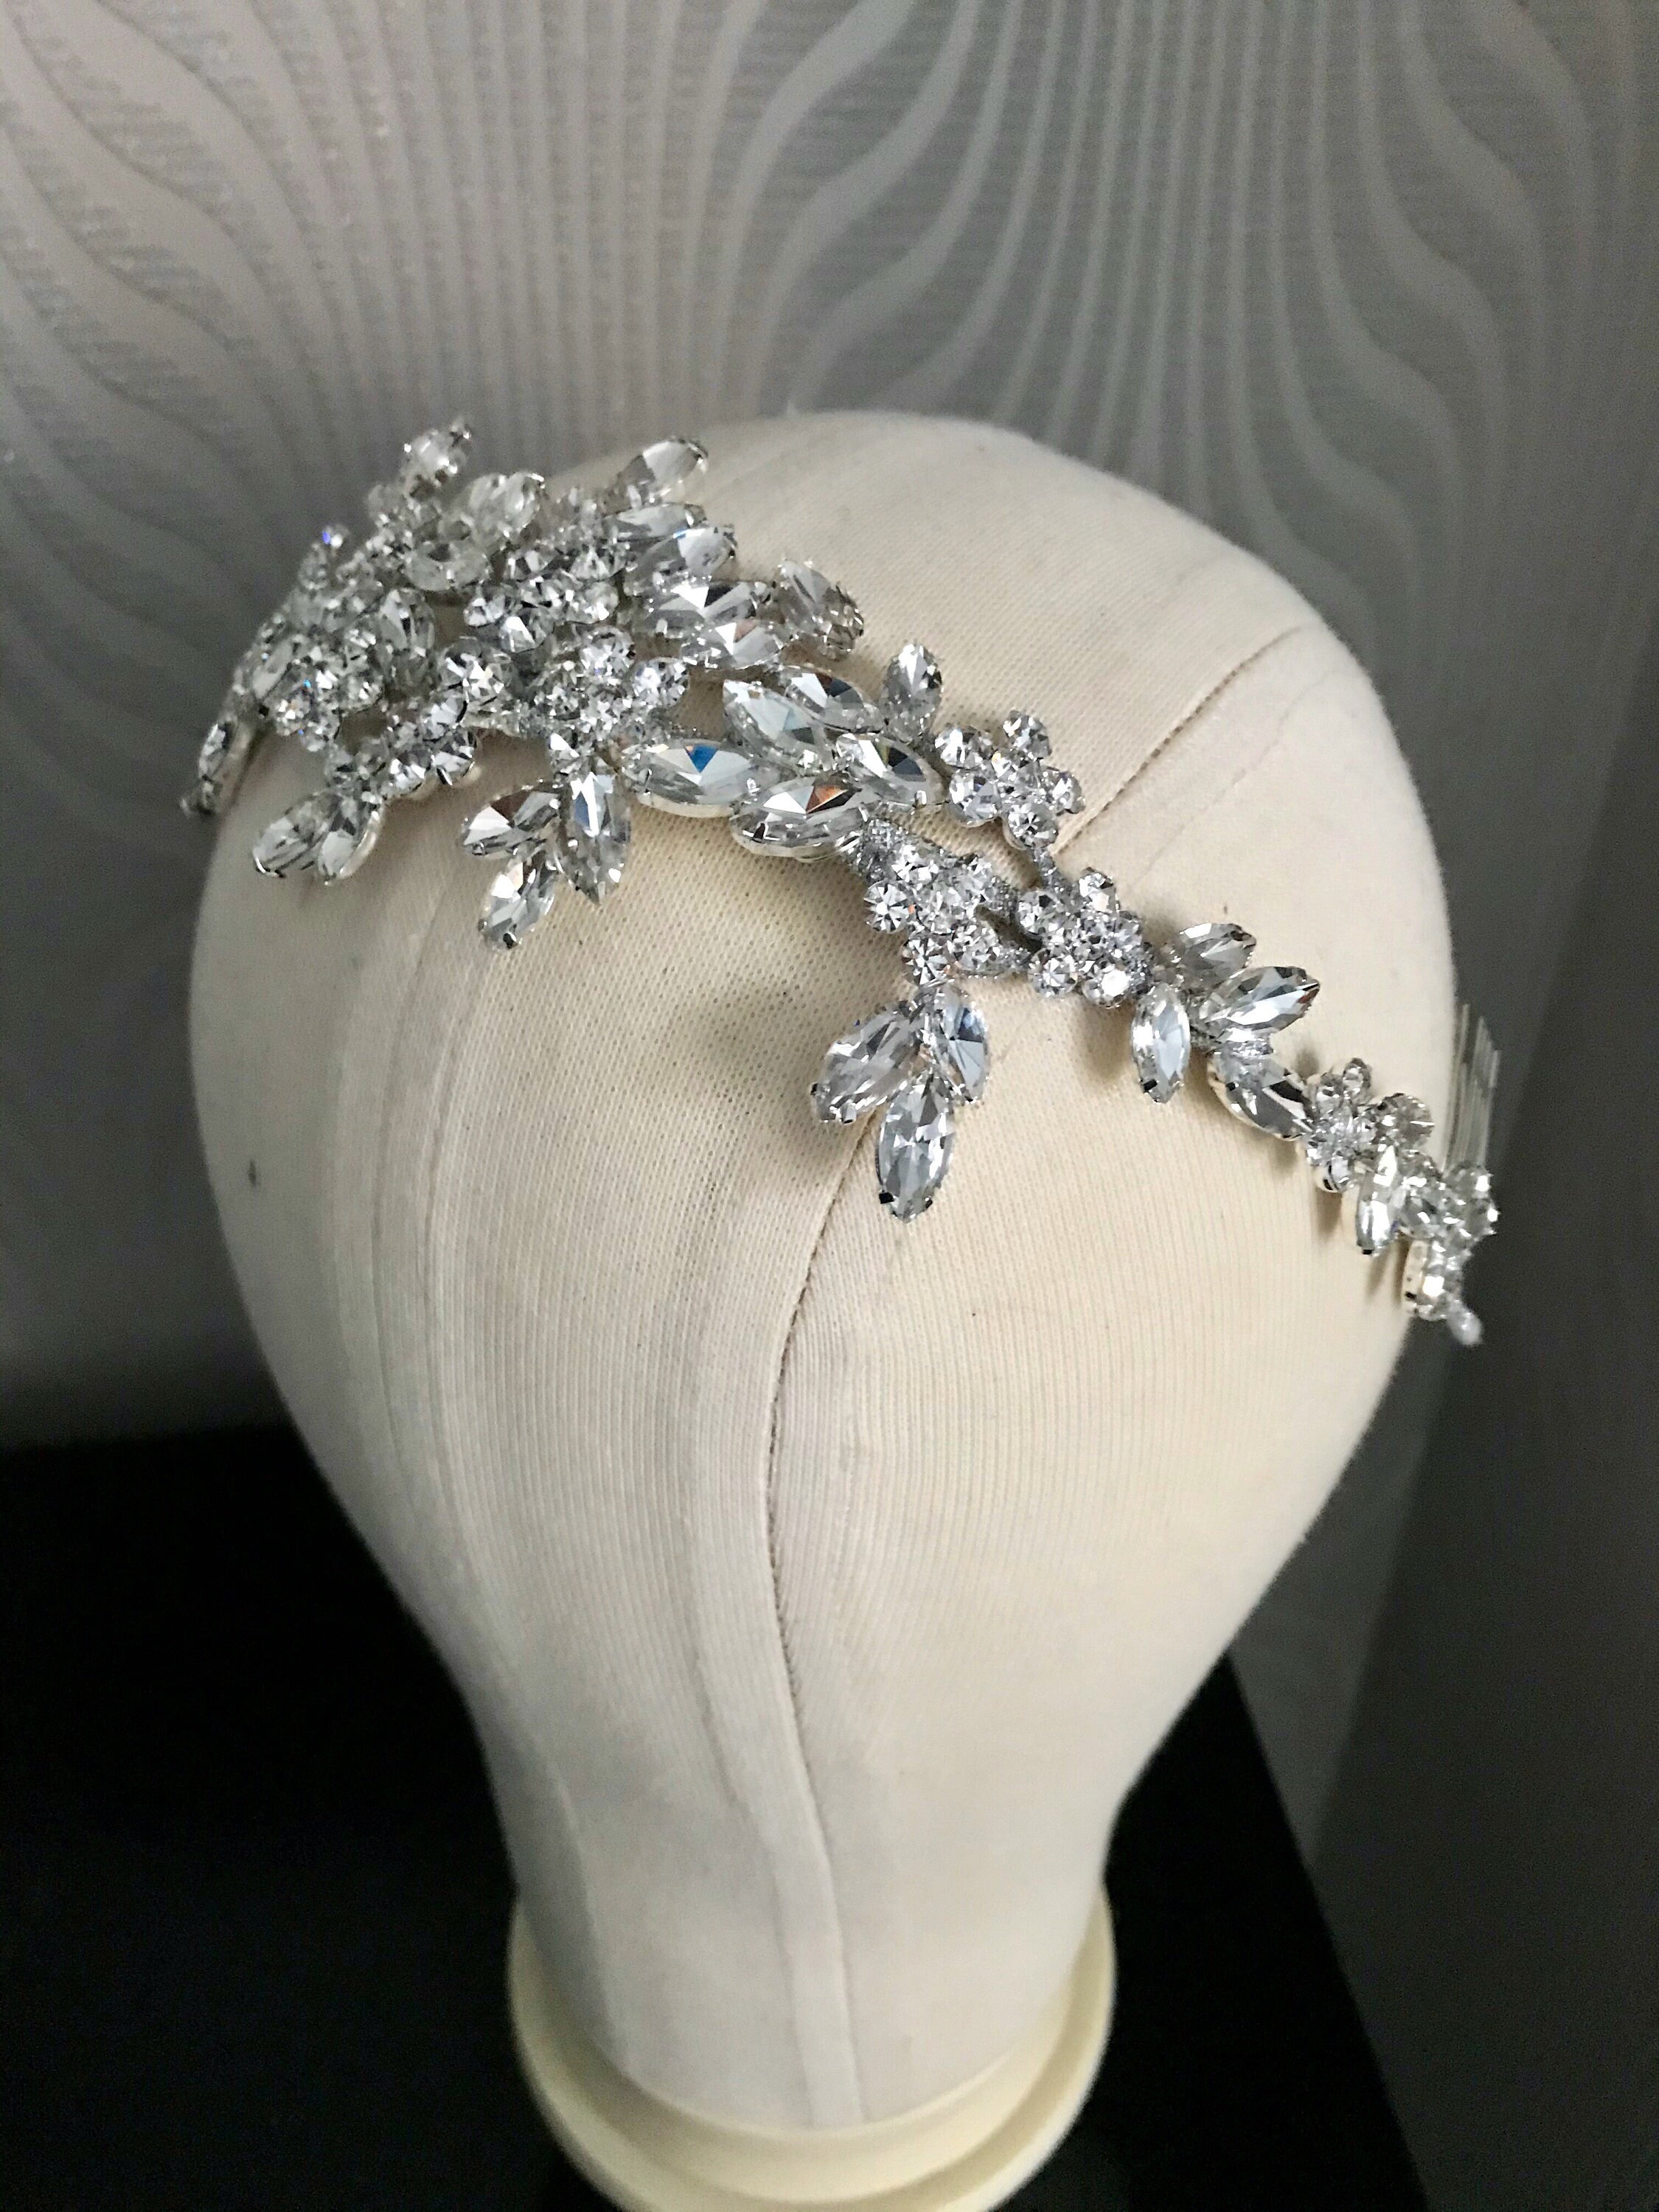 Crystal bridal headpiece headband wedding headband tiara | Etsy